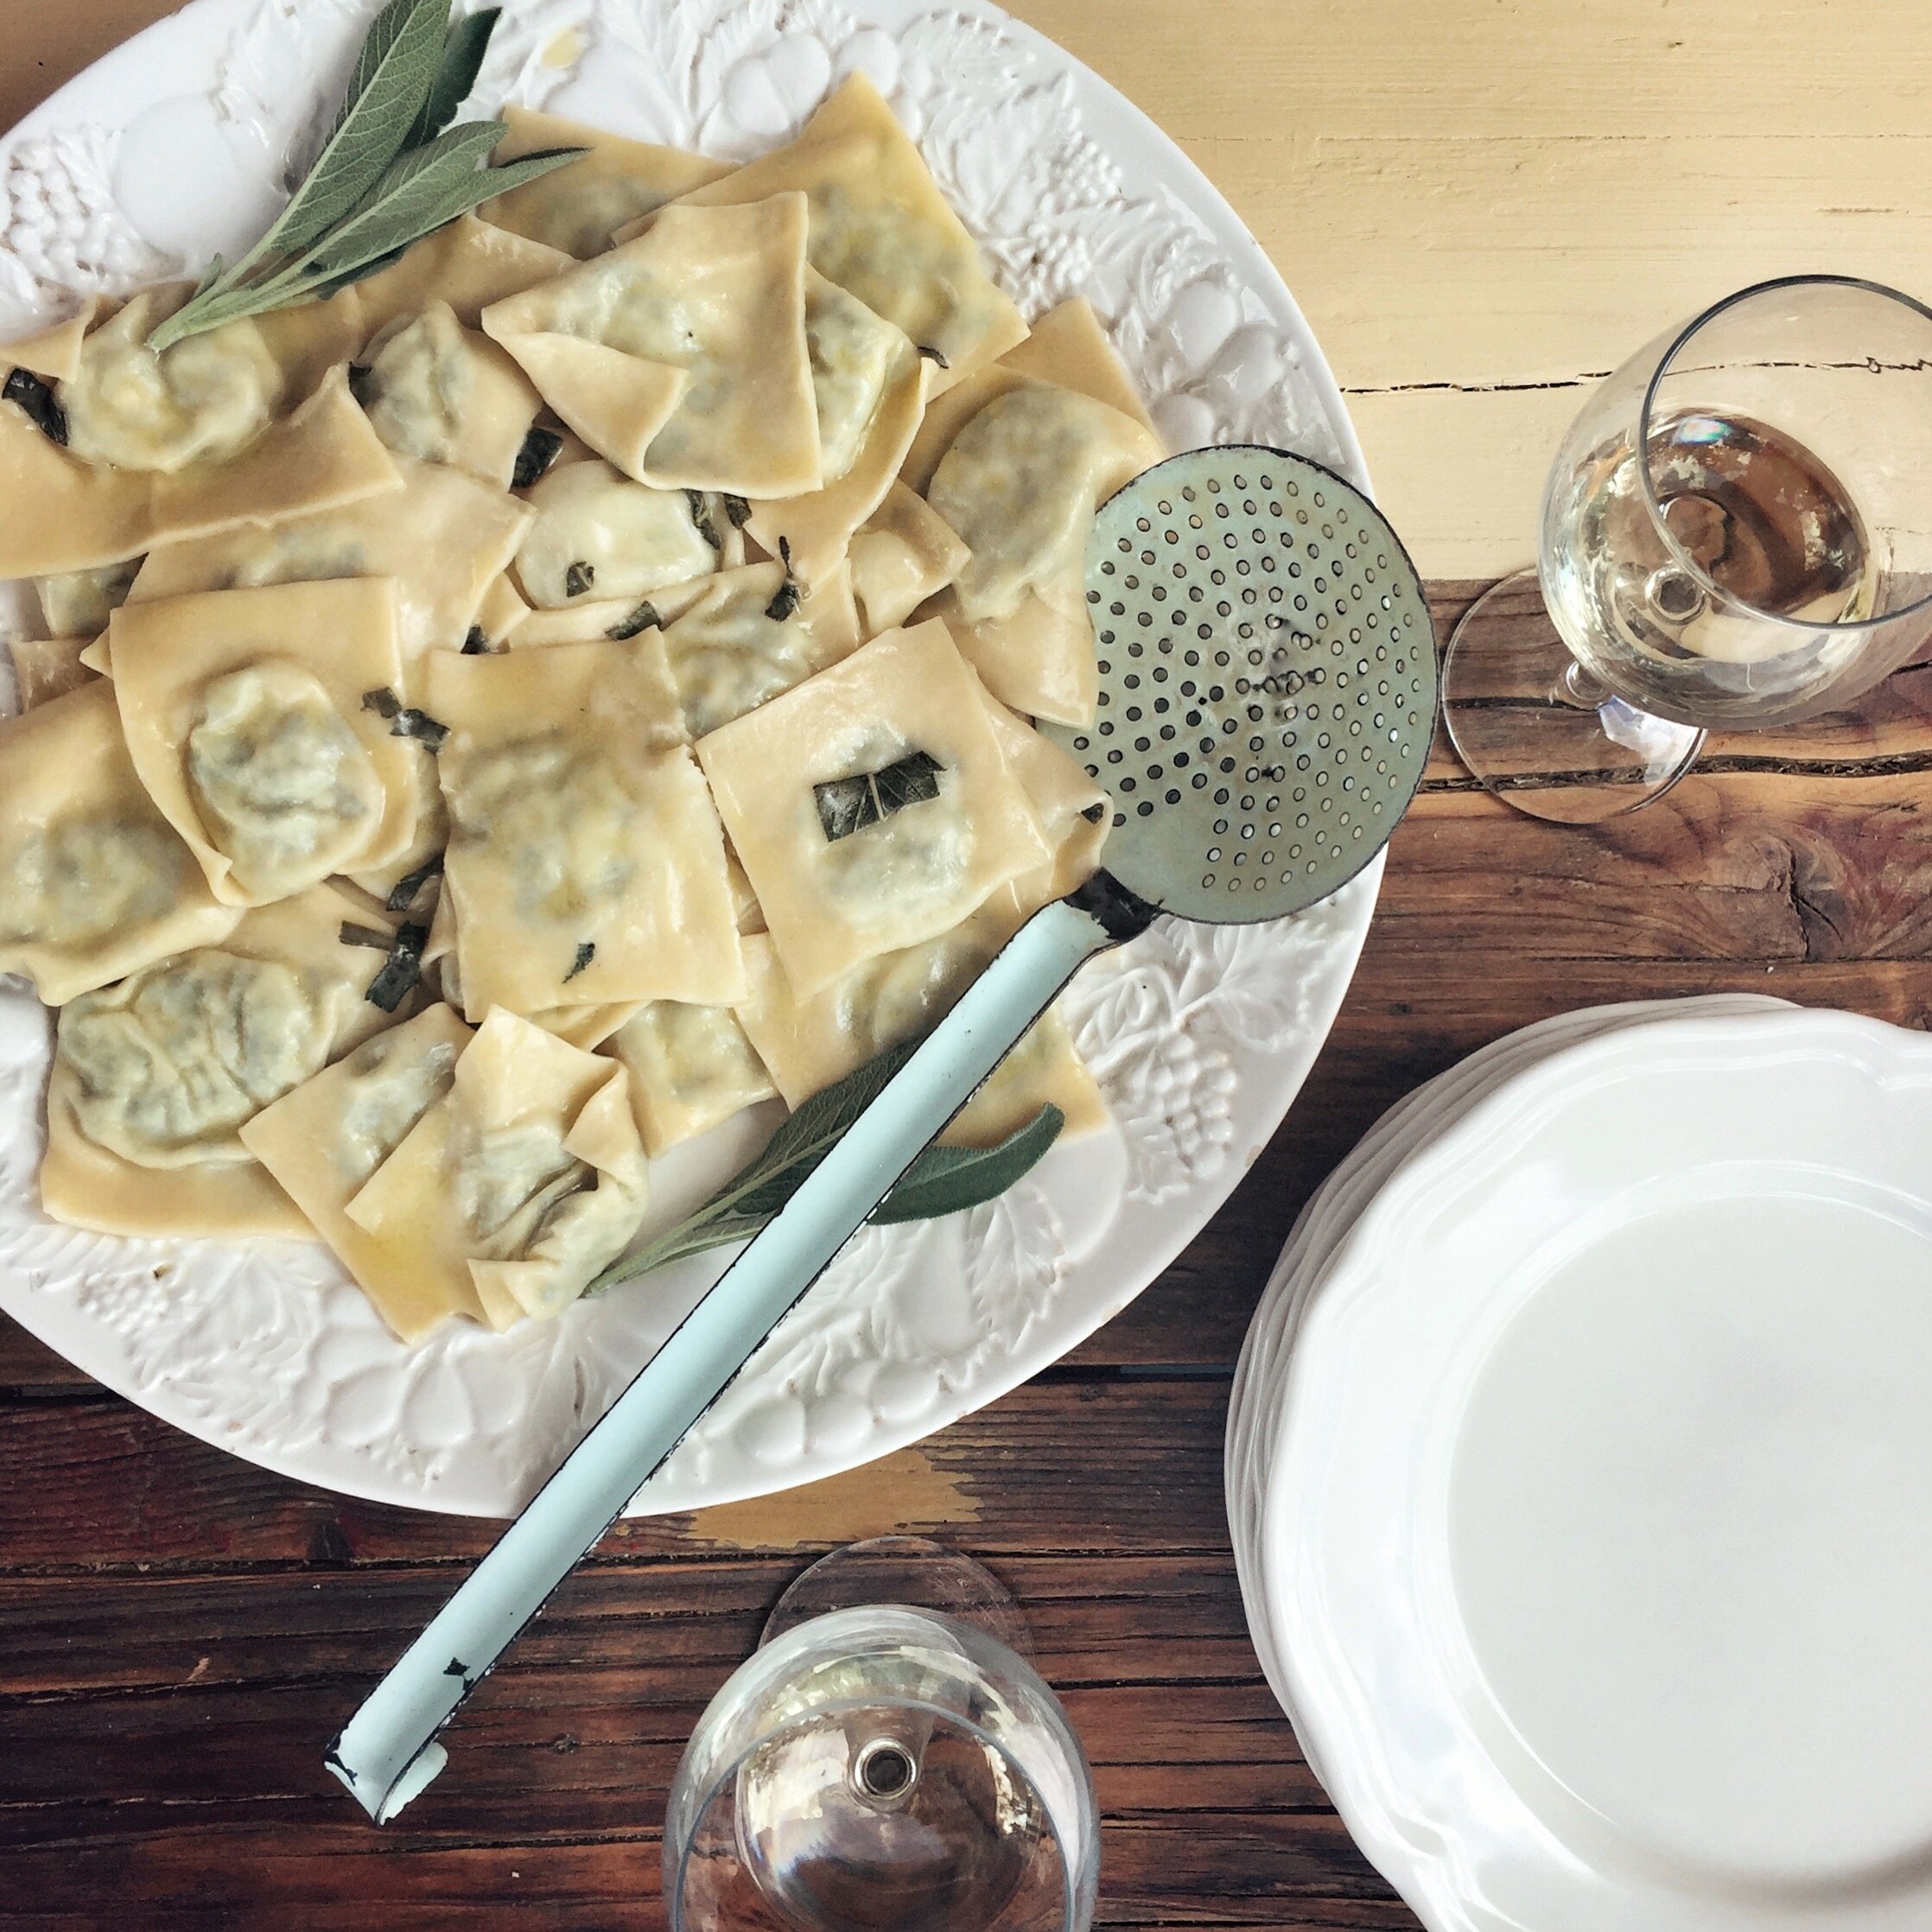 Handmade ravioli from a cooking class | EAT.PRAY.MOVE Yoga Retreats | Tuscany, Italy